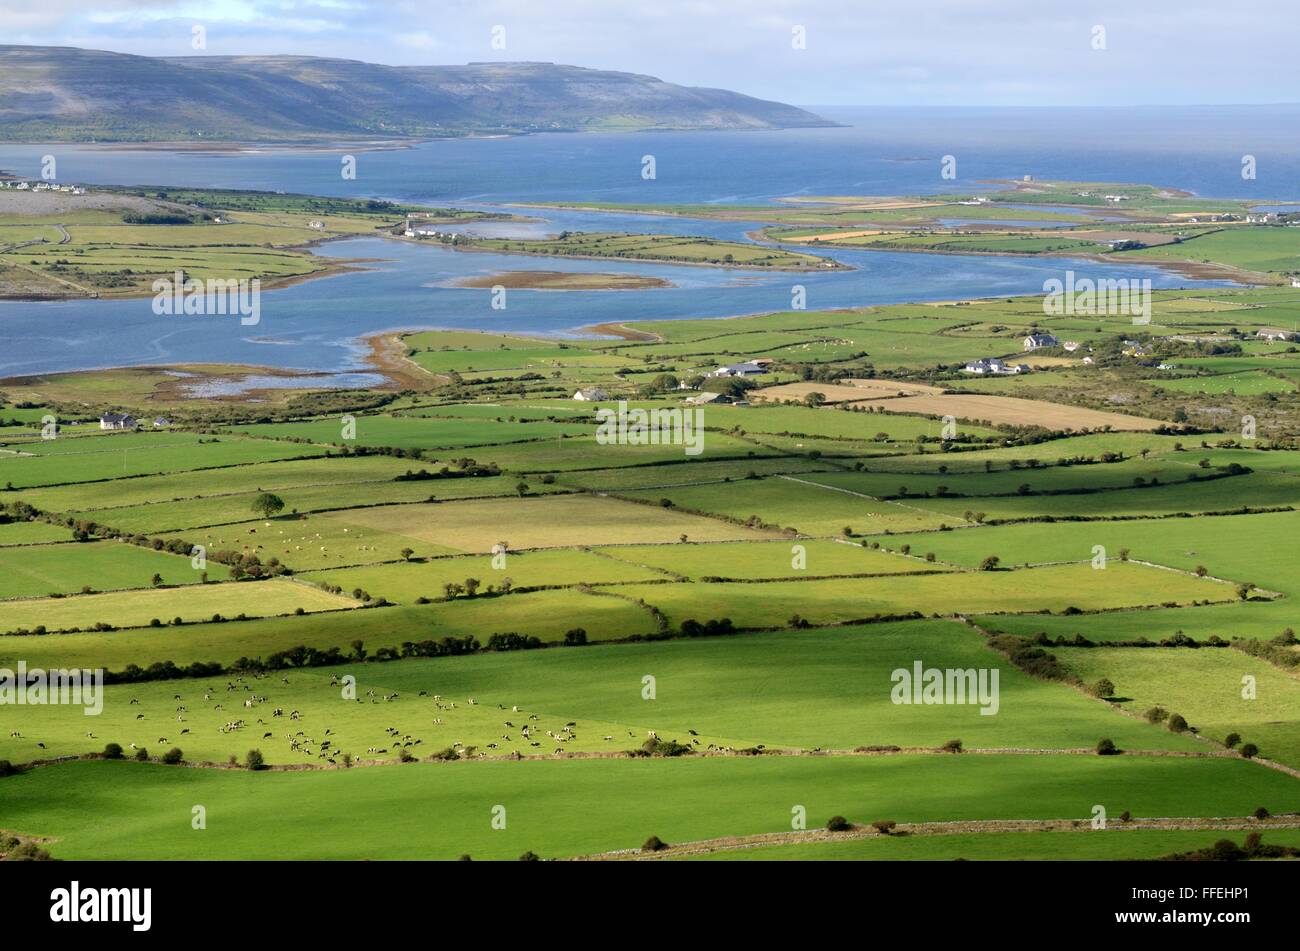 Vista desde la colina de la abadía irlandesa sobre verdes campos agrícolas hacia la bahía de Galway County Clare Burren Irlanda Foto de stock